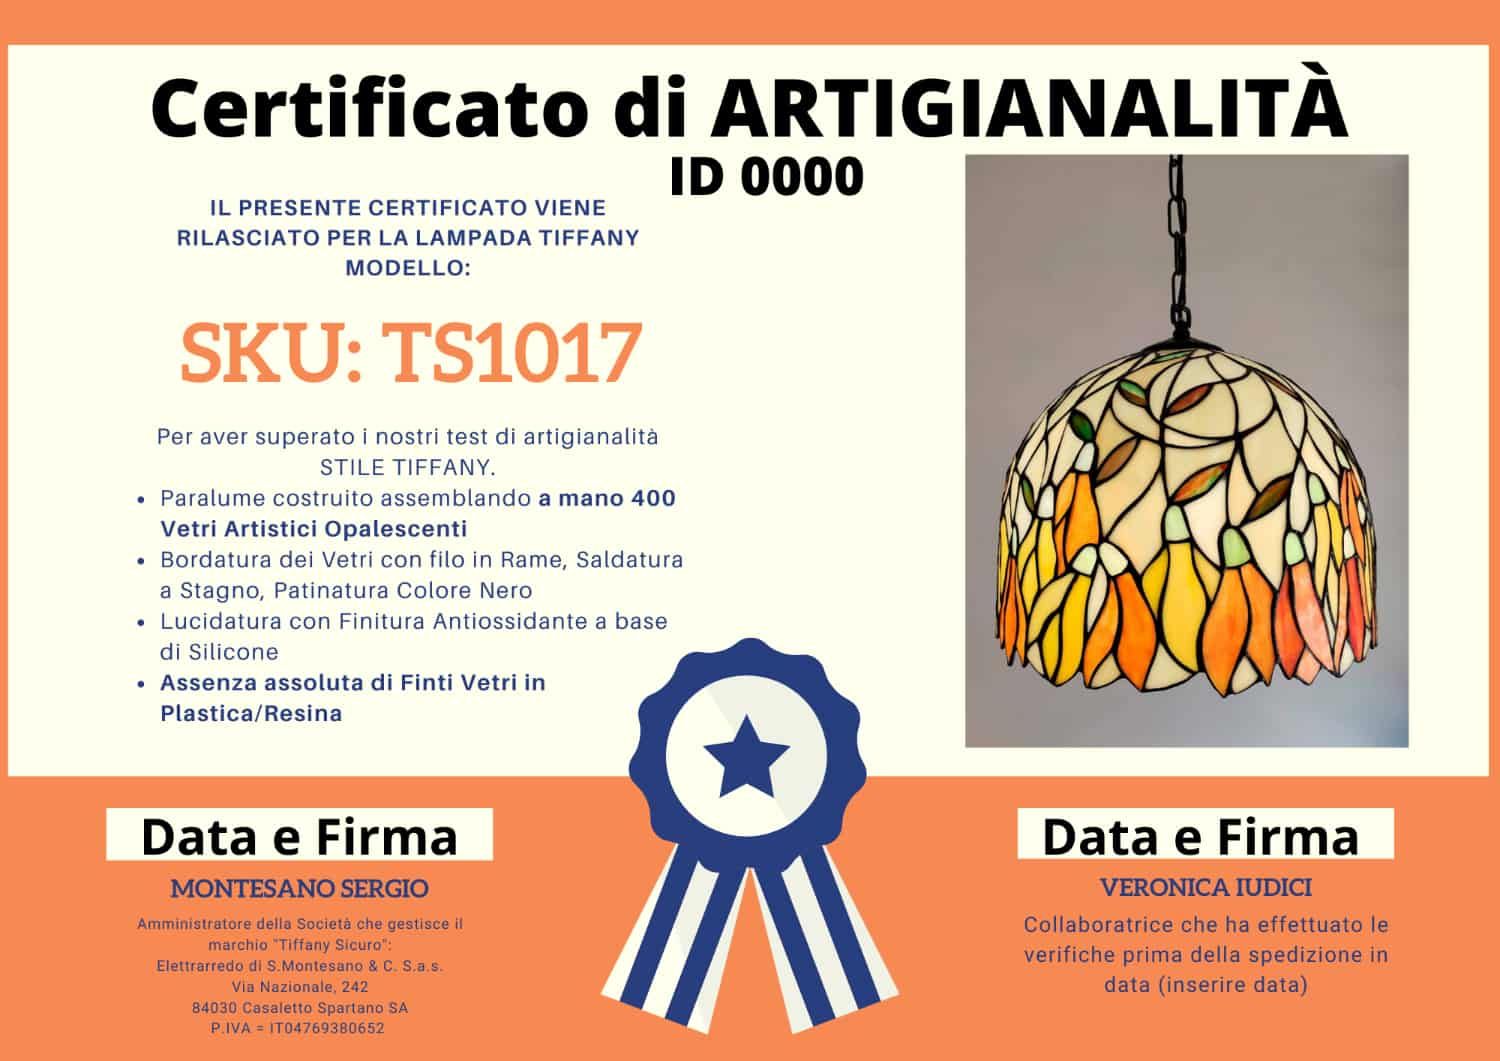 Lampadario Tiffany con Fiori Gialli Arancioni e Sfondo Bianco, certificato